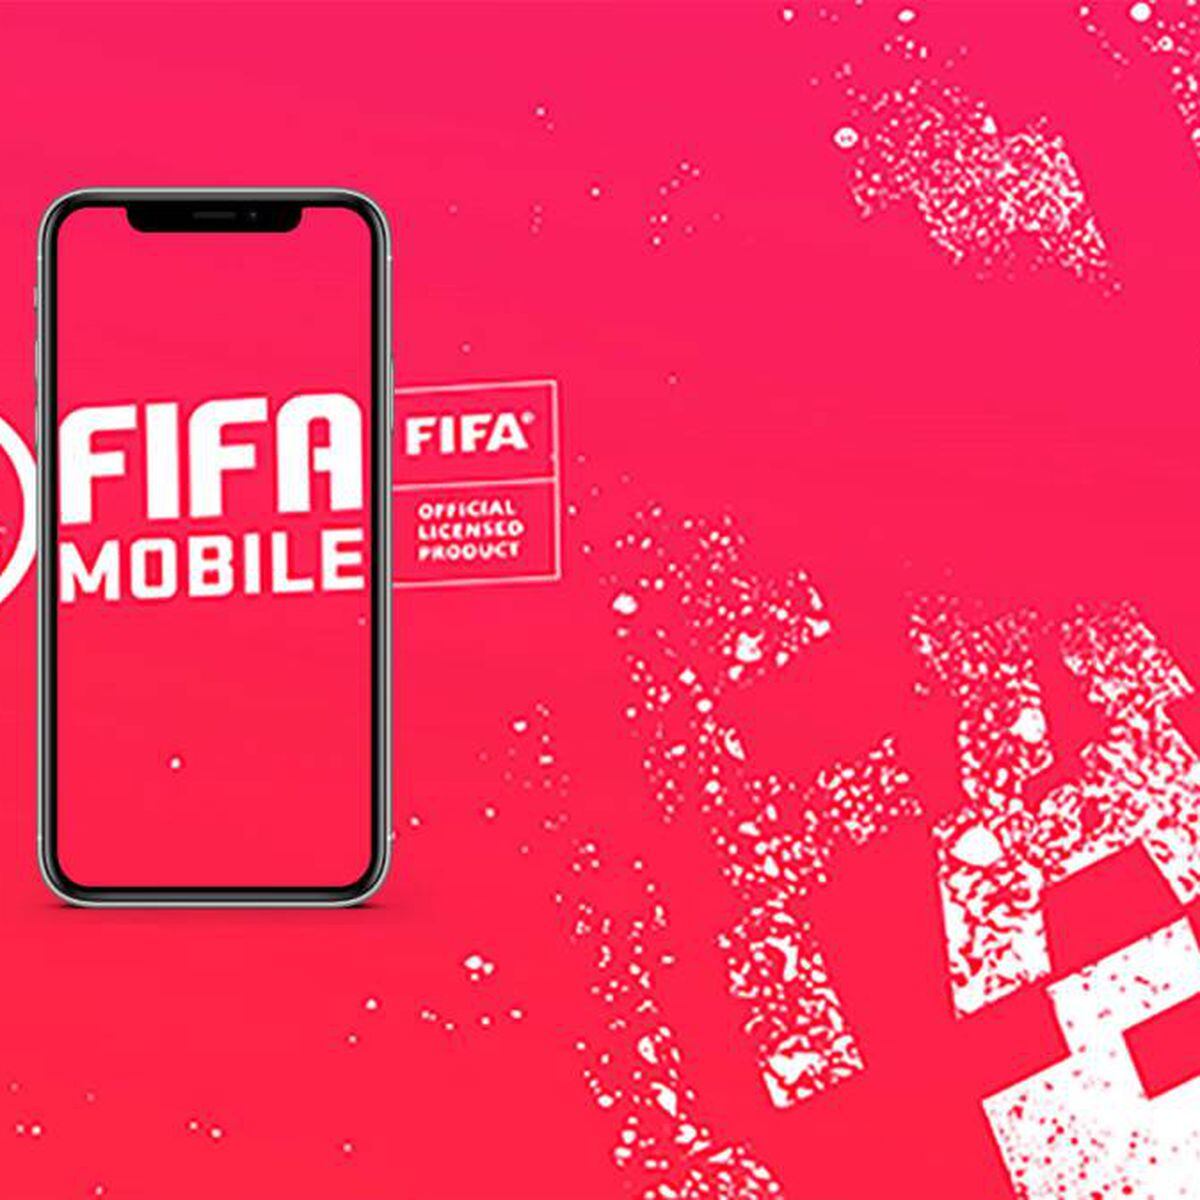 Solo podrás jugar a FIFA 21 Mobile si tienes alguno de estos móviles